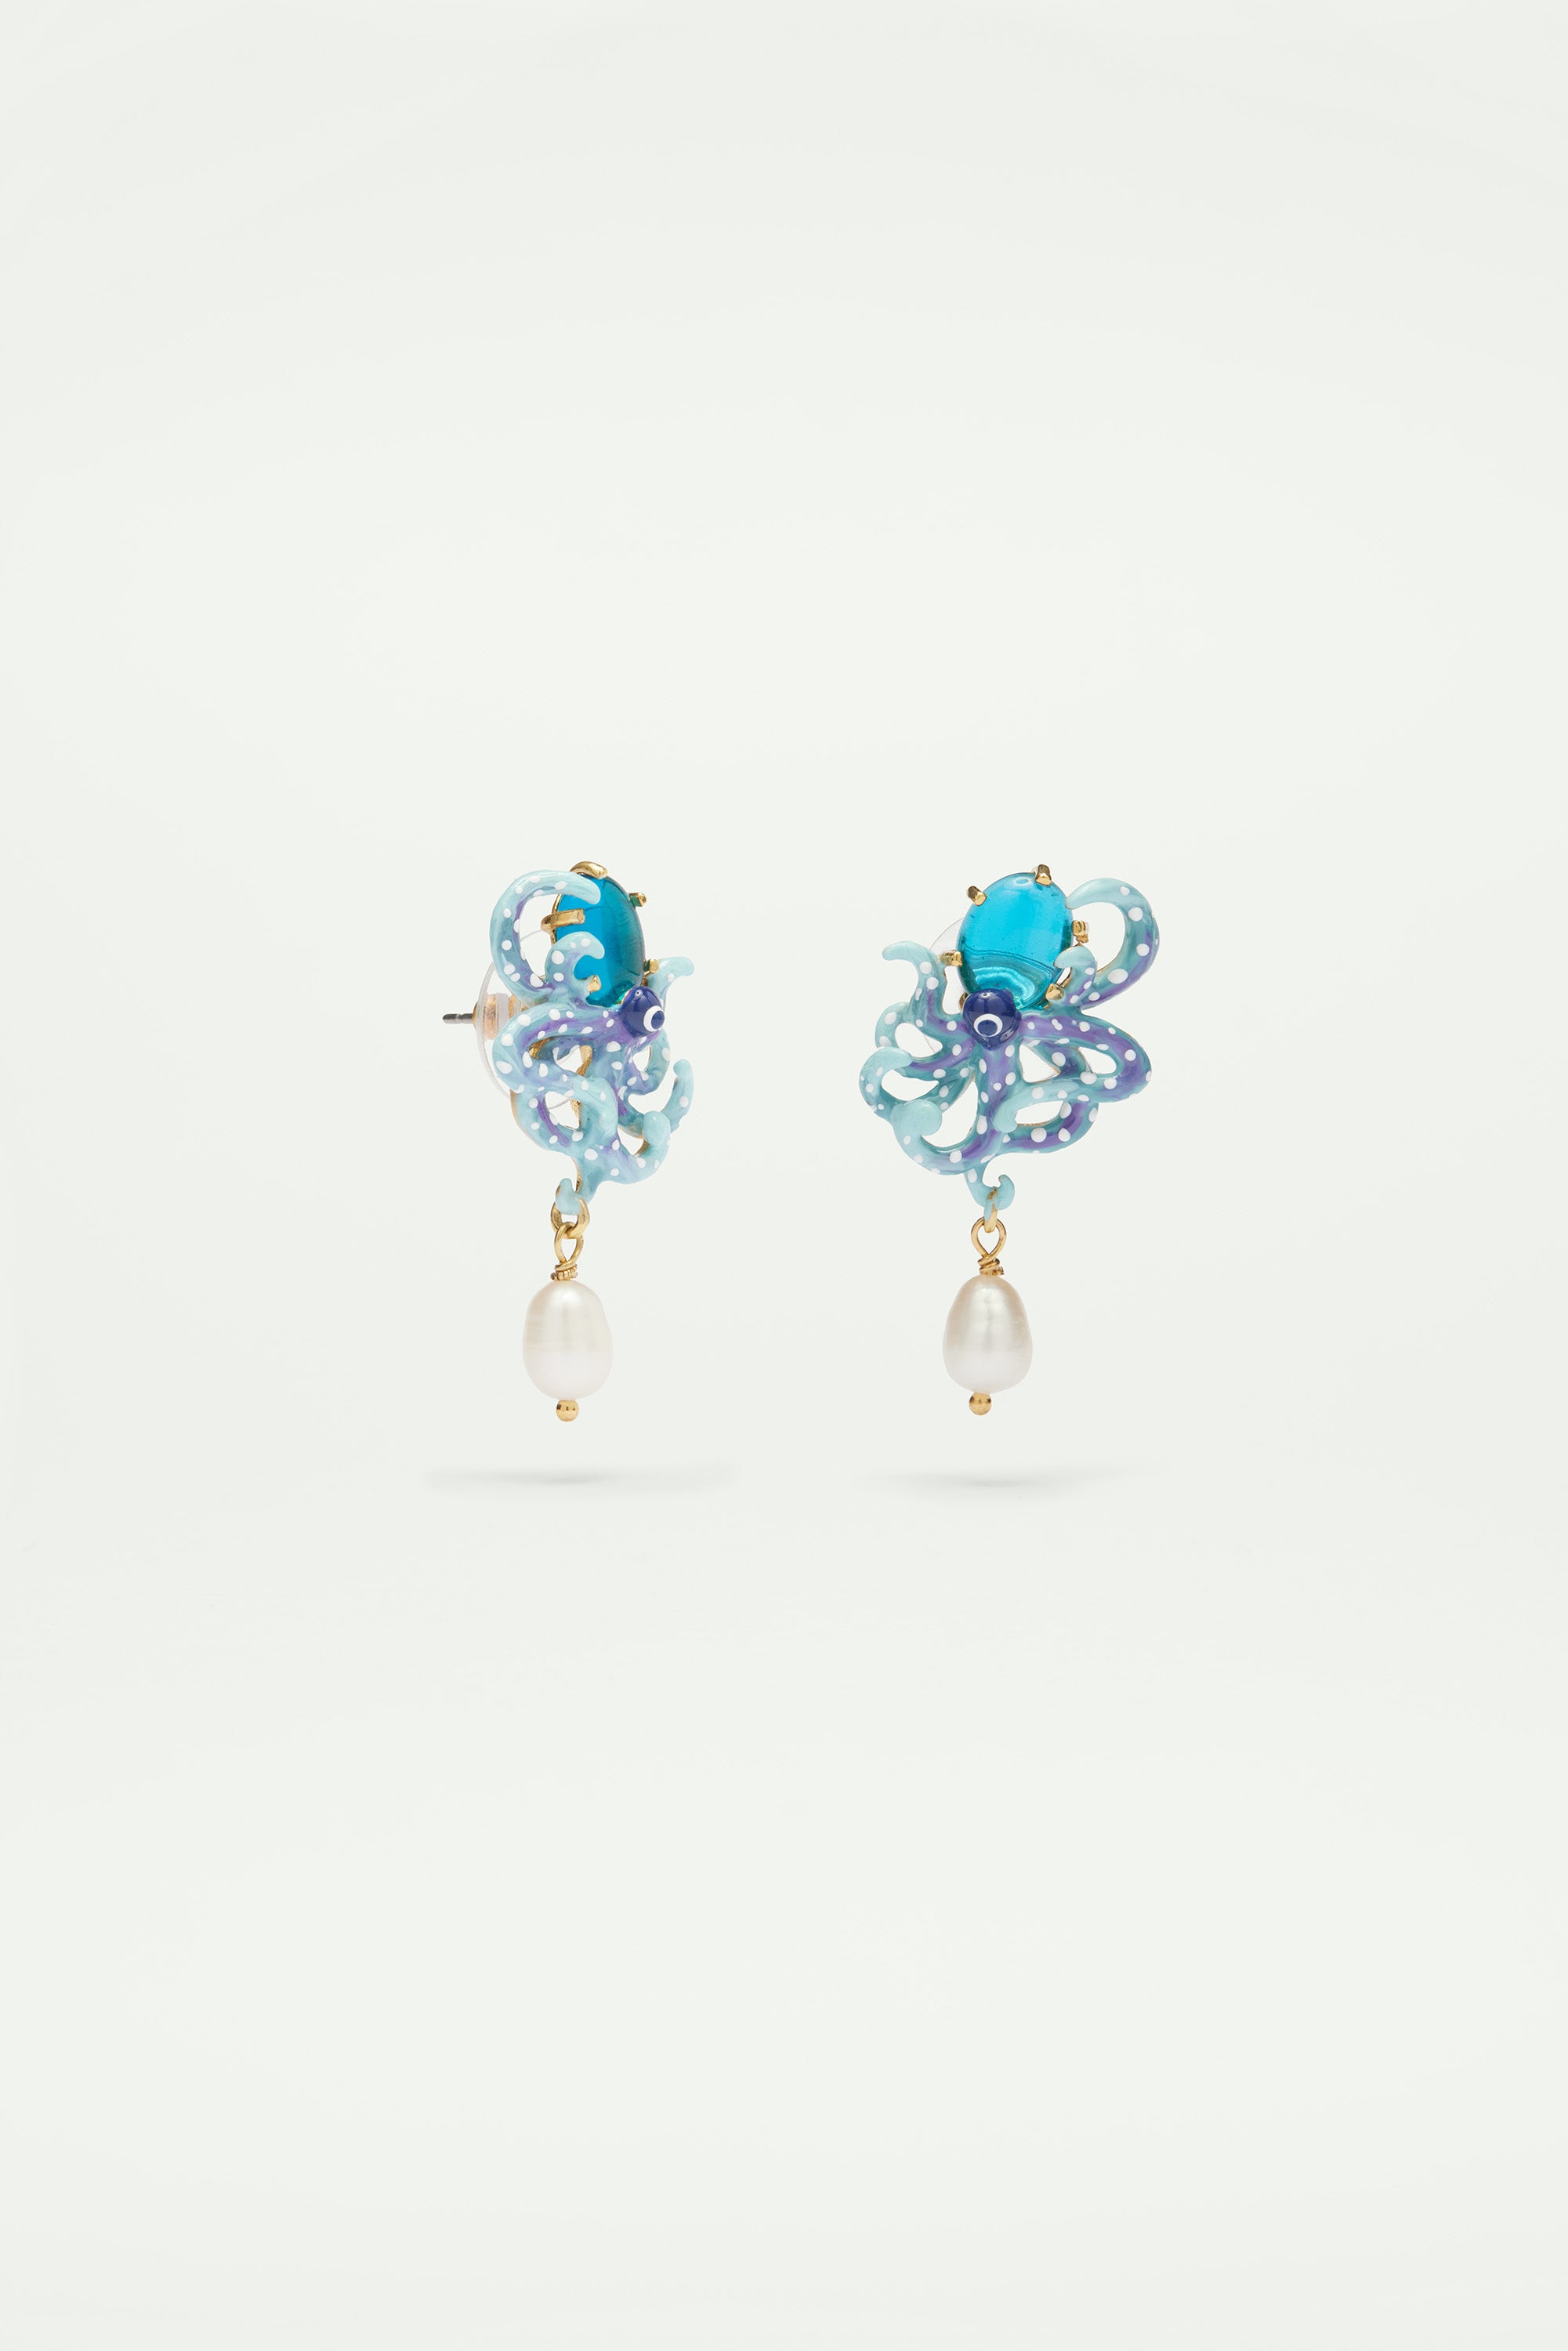 Boucles d'oreilles tiges pieuvre bleue émaillée, pierre en verre taillé bleu et perle nacrée